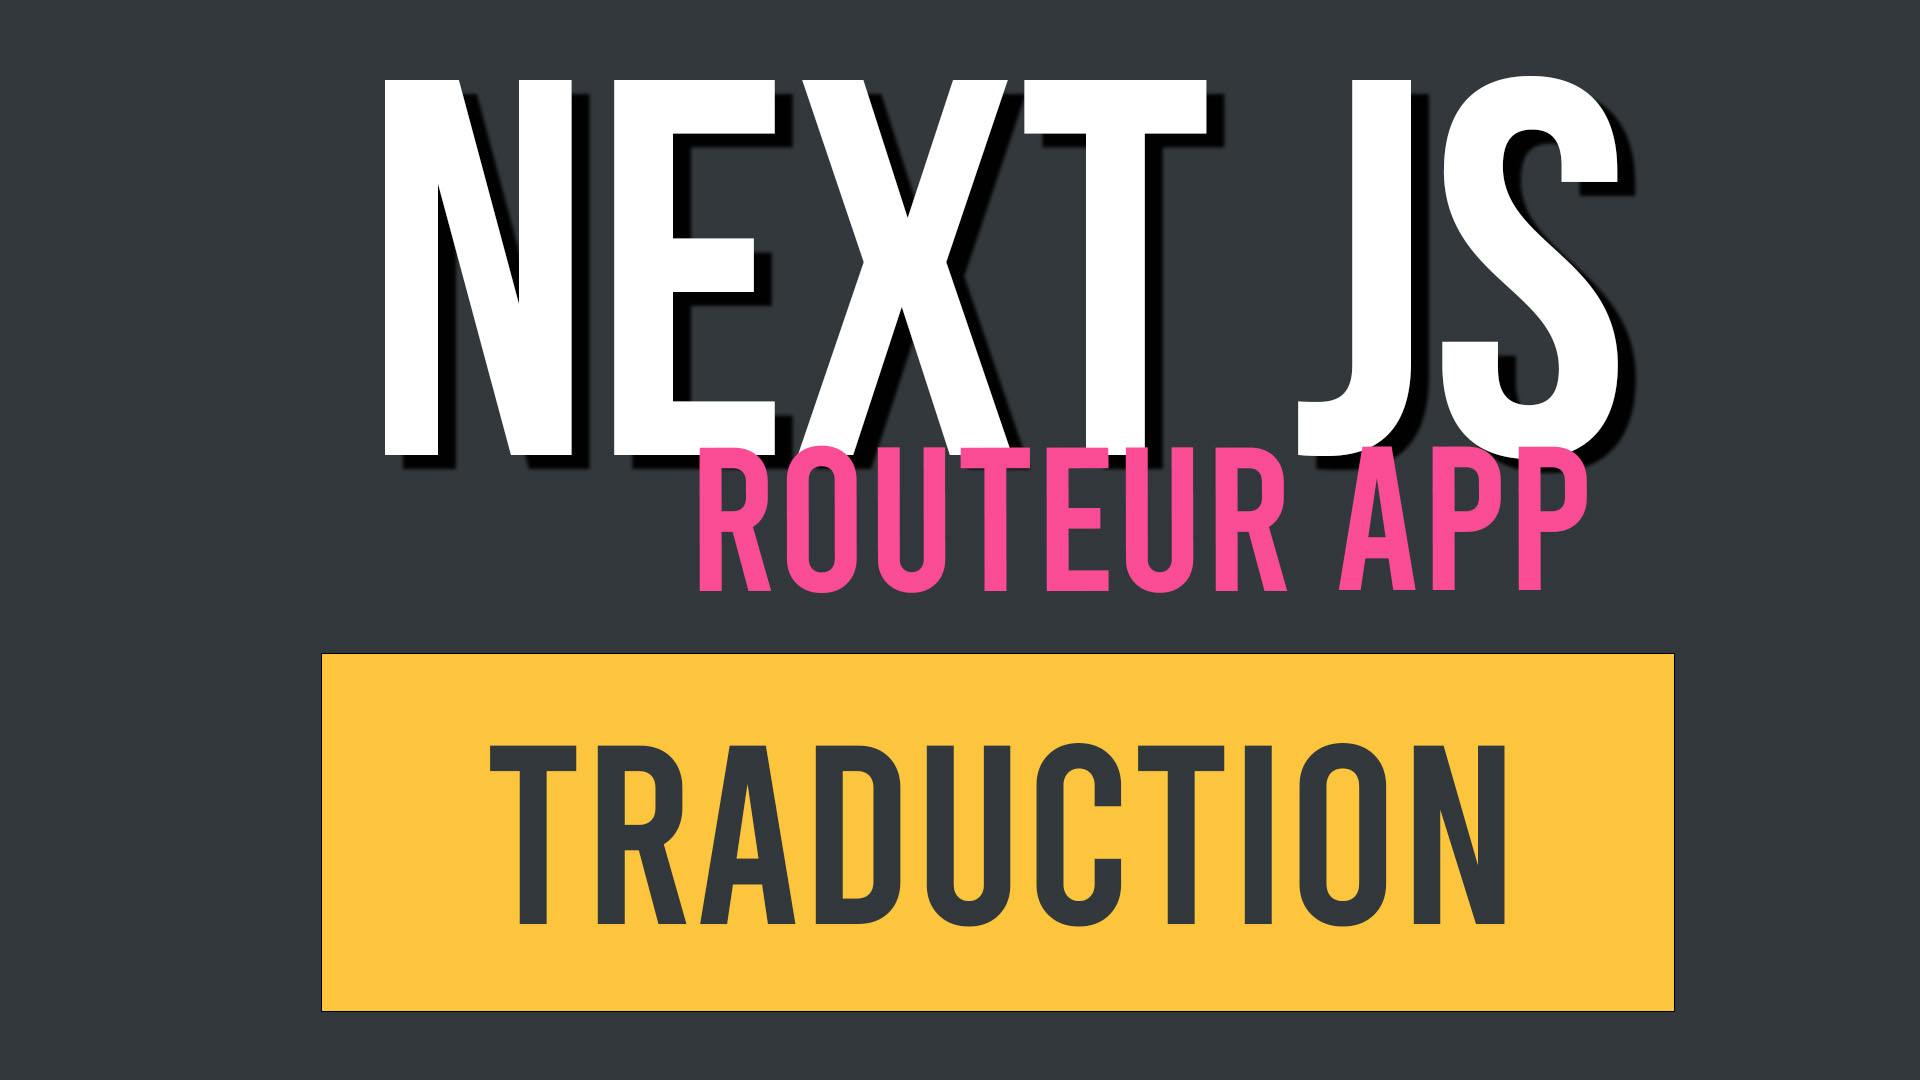 Next JS app routeur : comment localiser et traduire